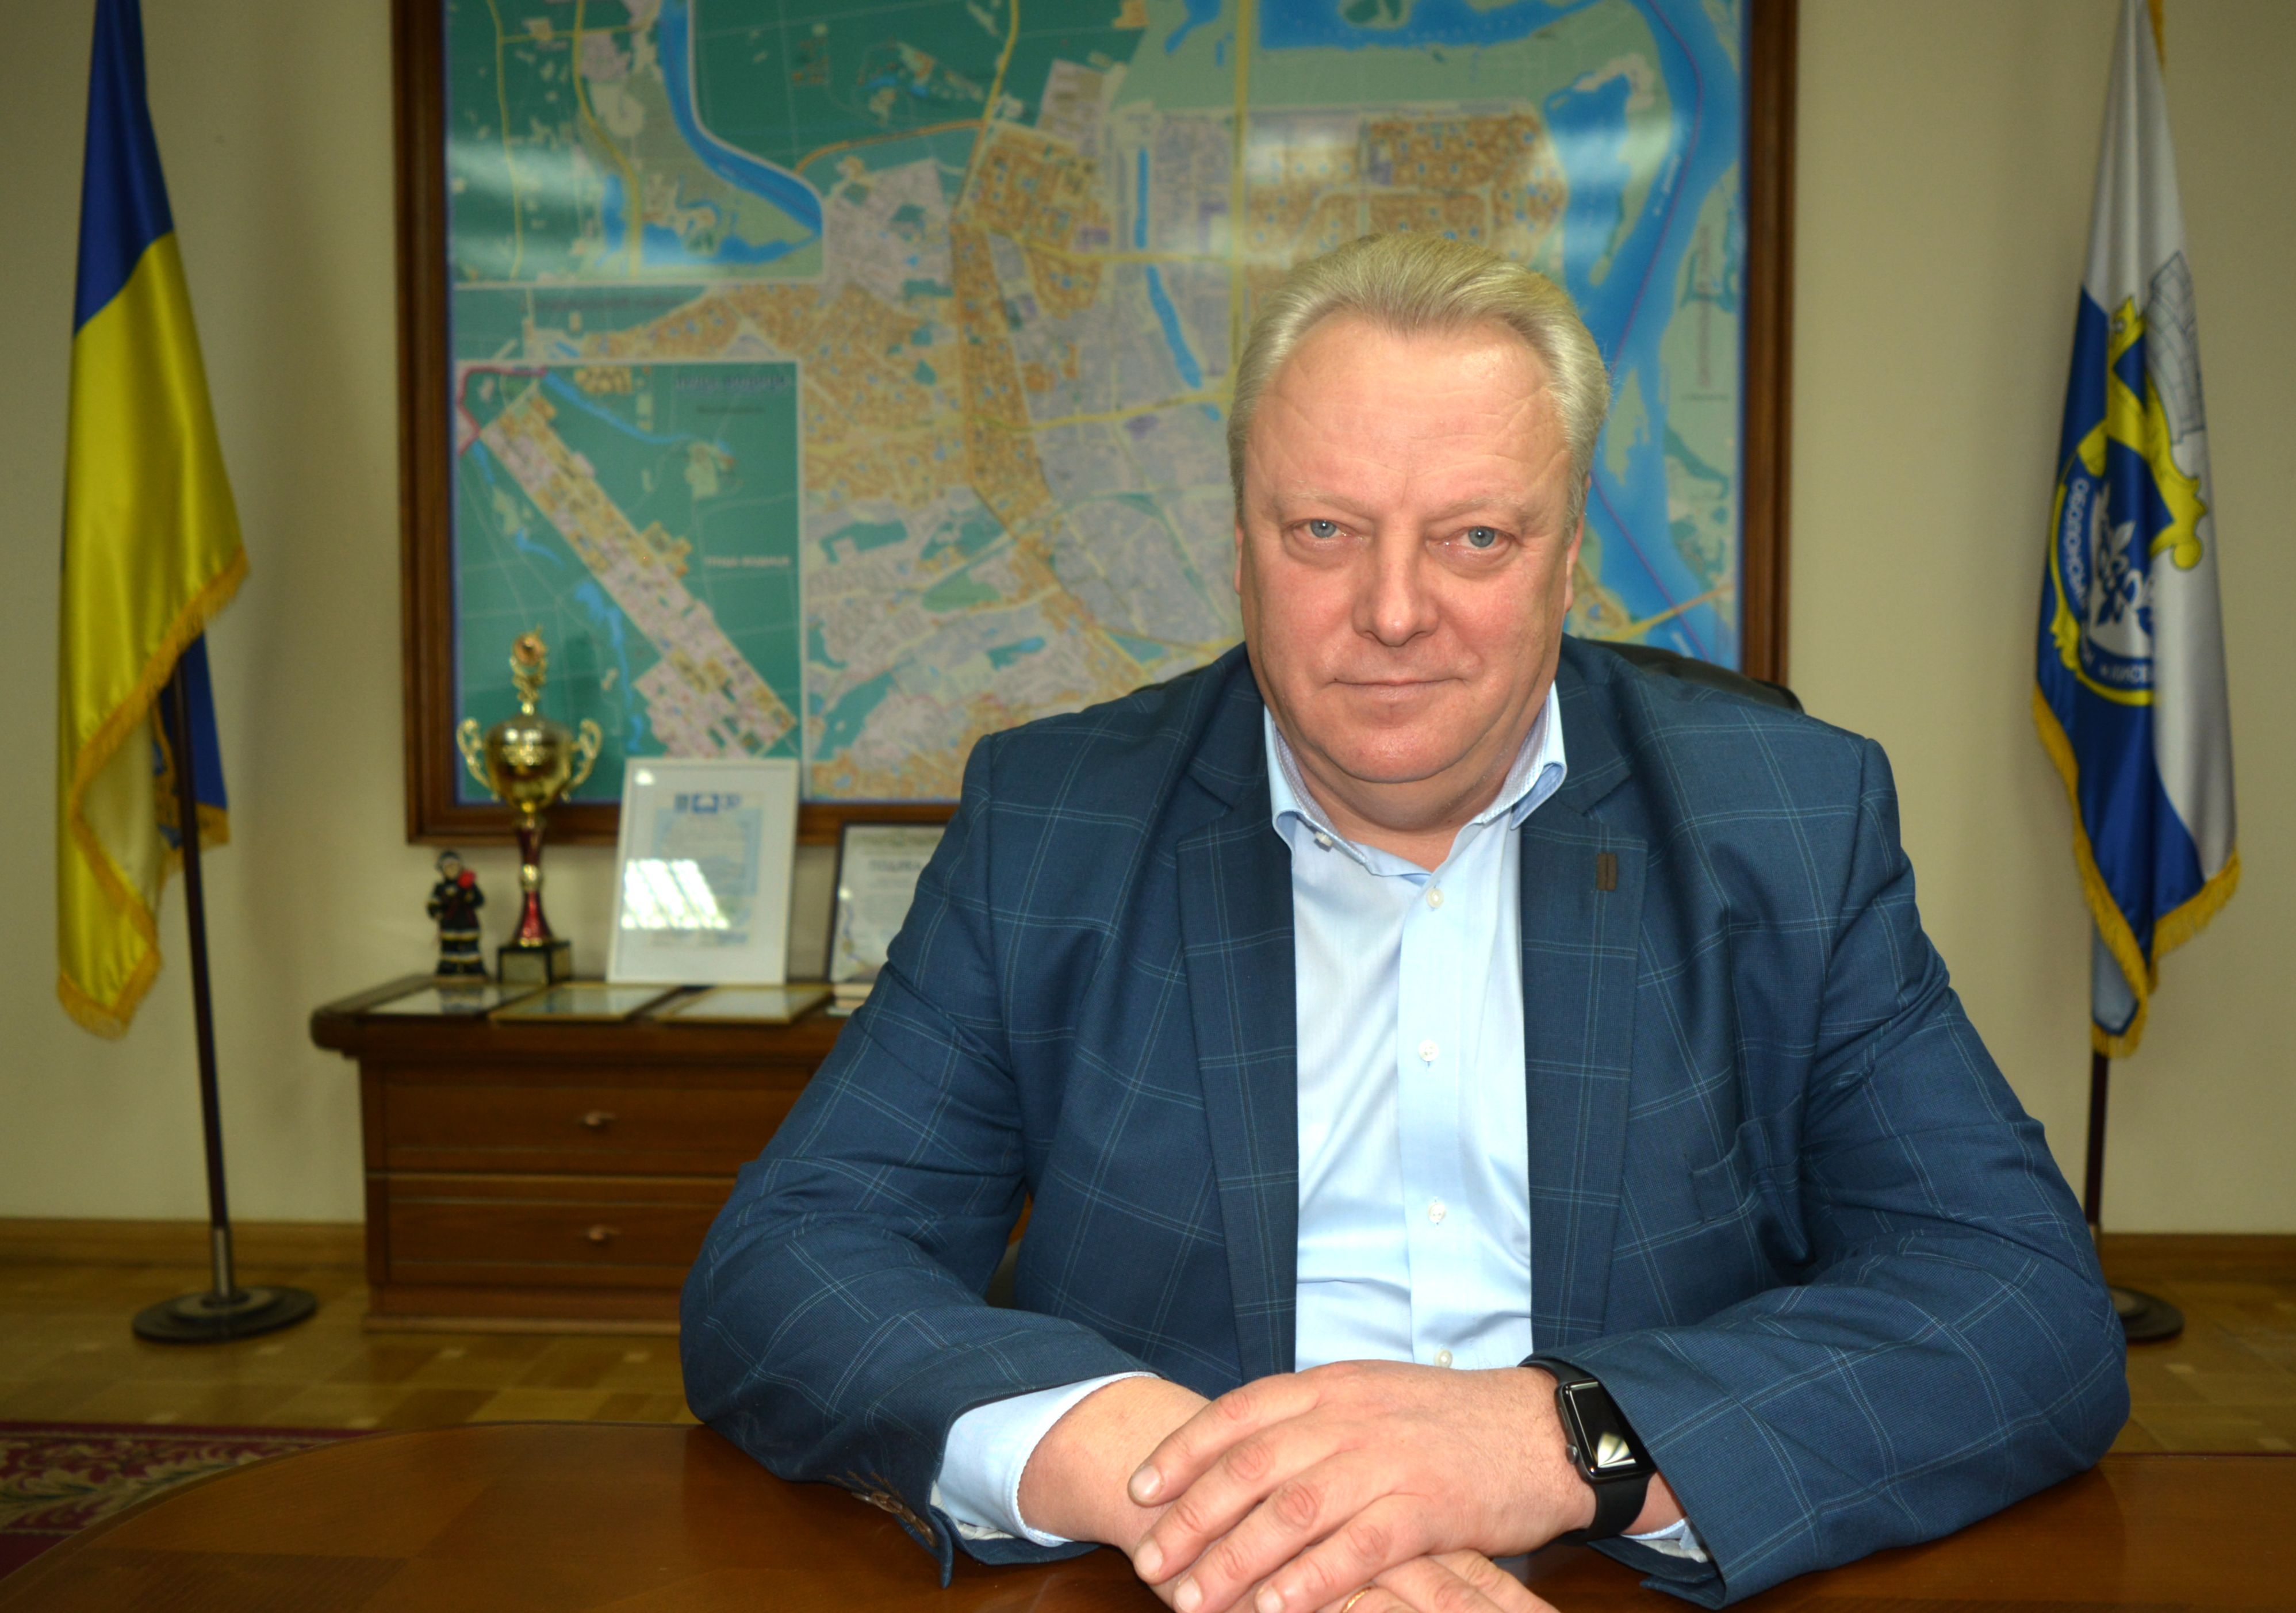 Олександр Цибульщак: “Особливістю 2018 року є суттєве збільшення фінансування житлово-комунального господарства району”